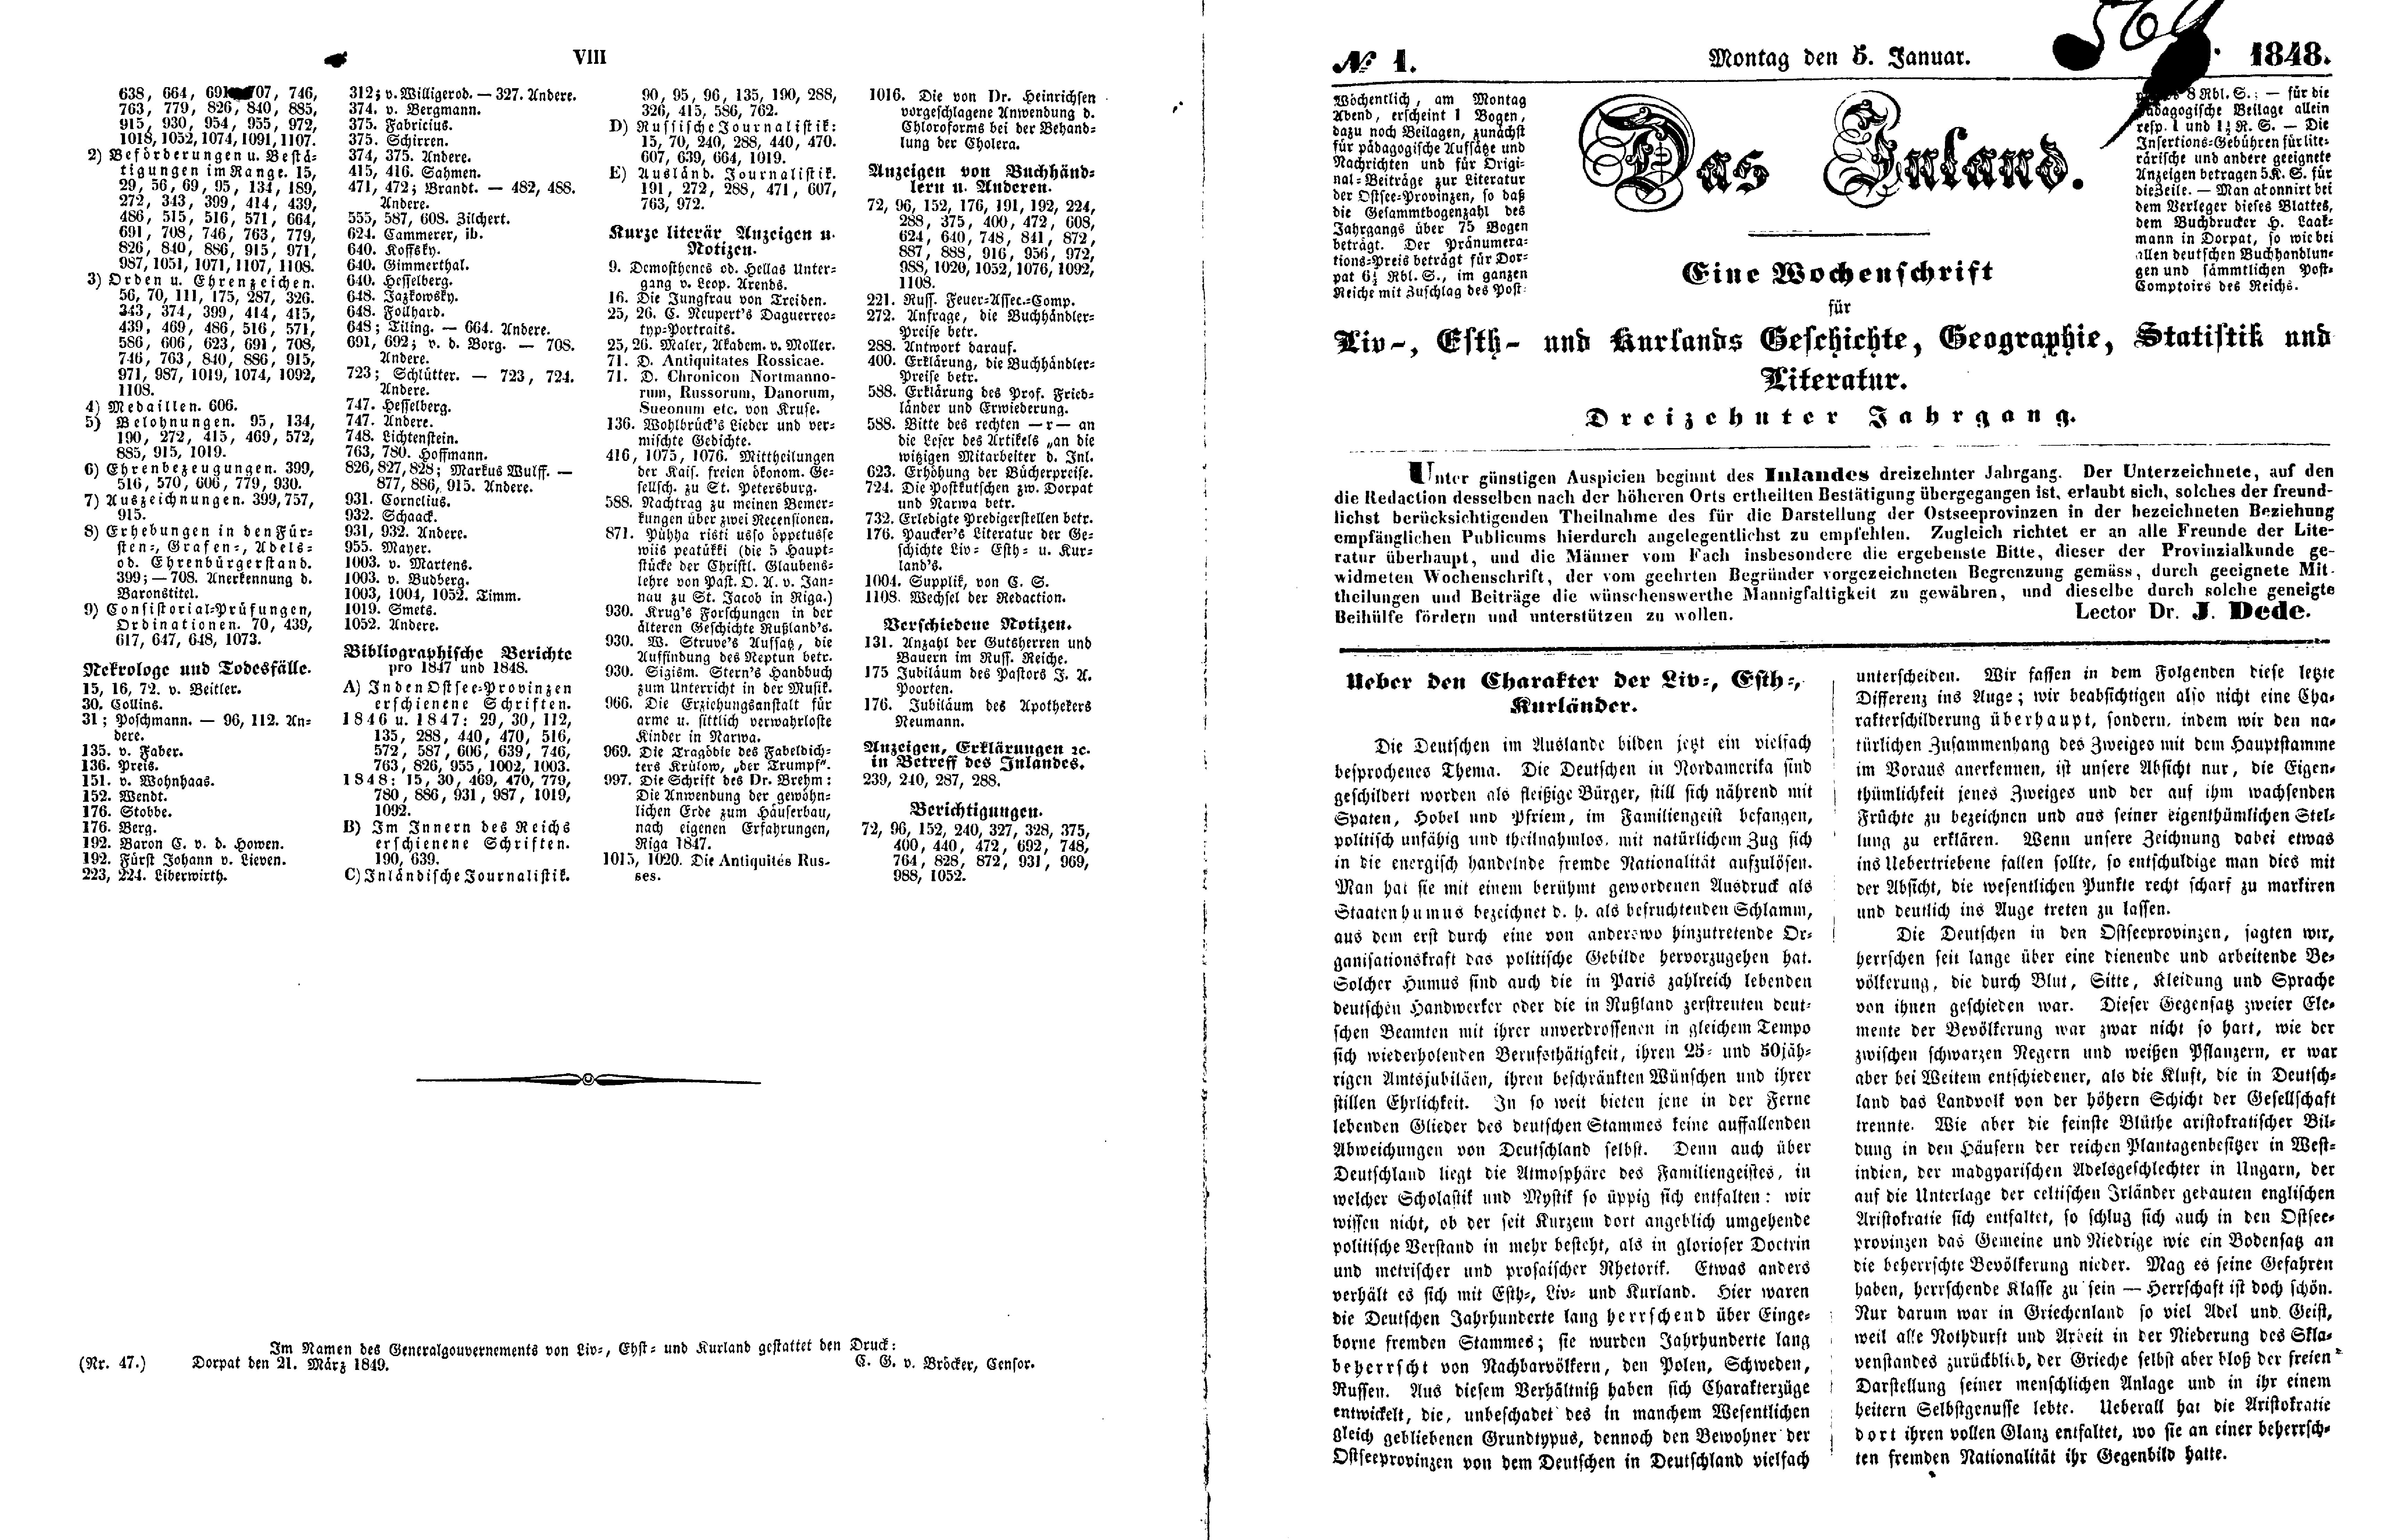 Das Inland [13] (1848) | 5. (VIII-2) Указатель, Основной текст